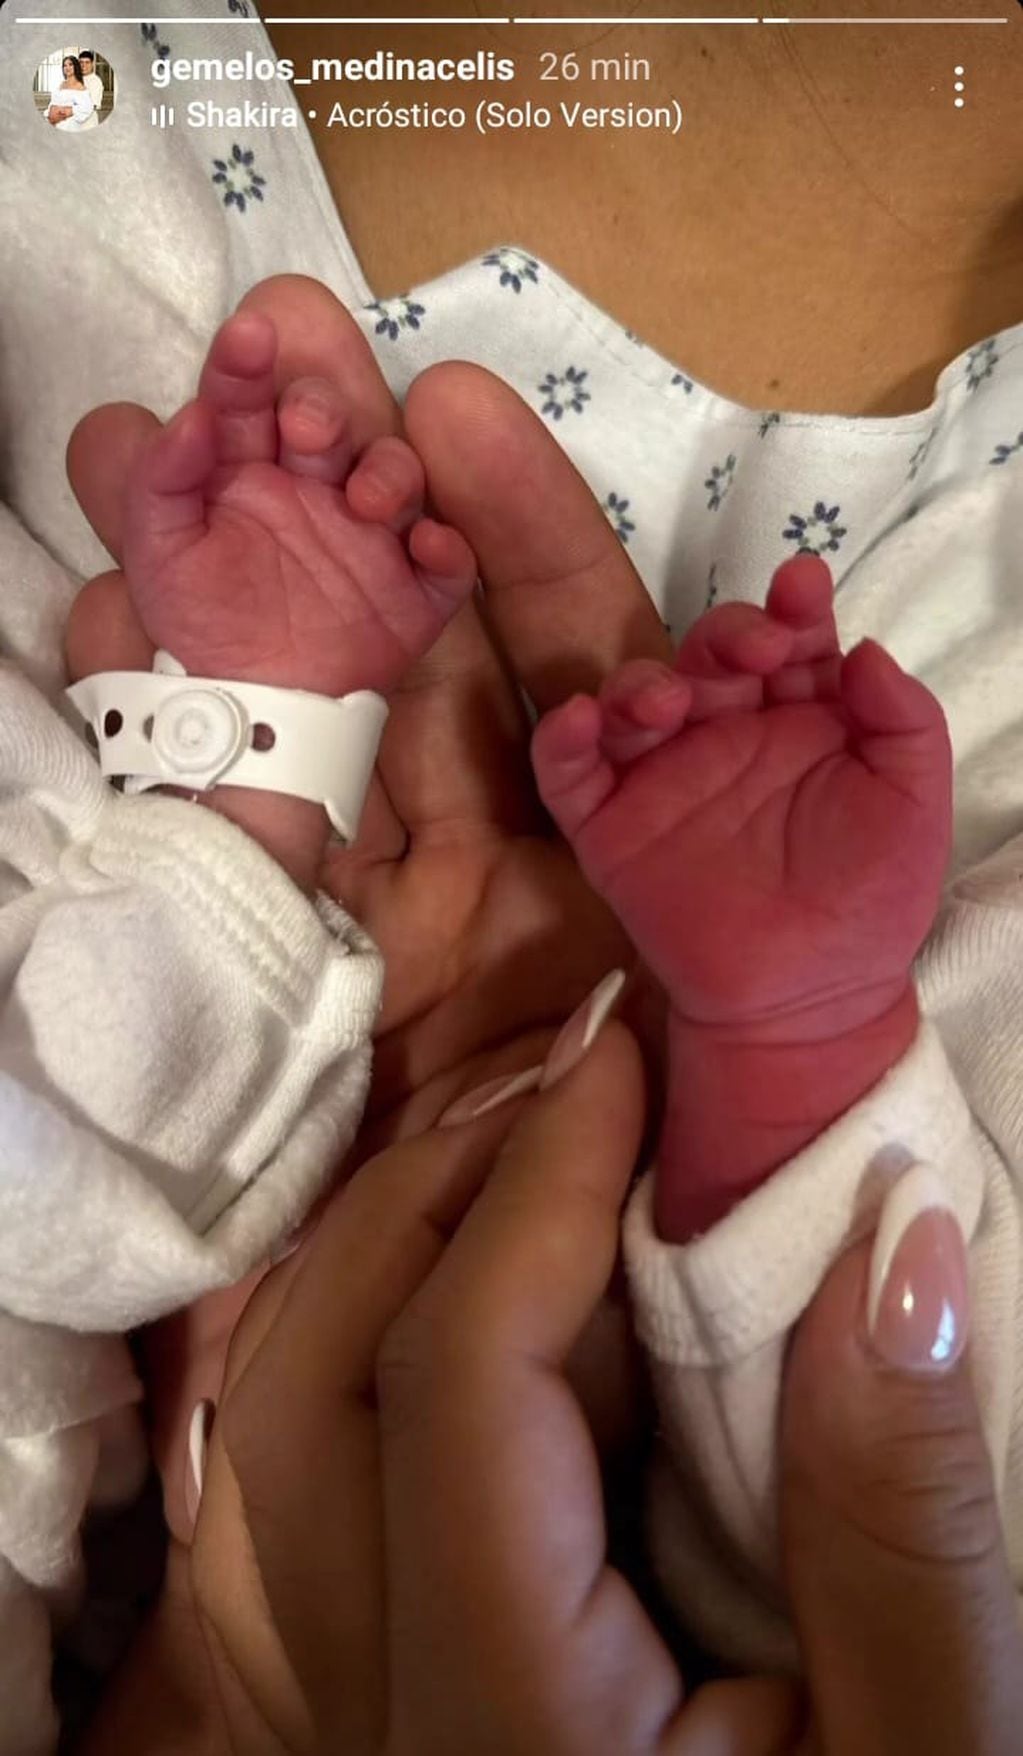 Las gemelas Aime y Laia nacieron con dos minutos de diferencia